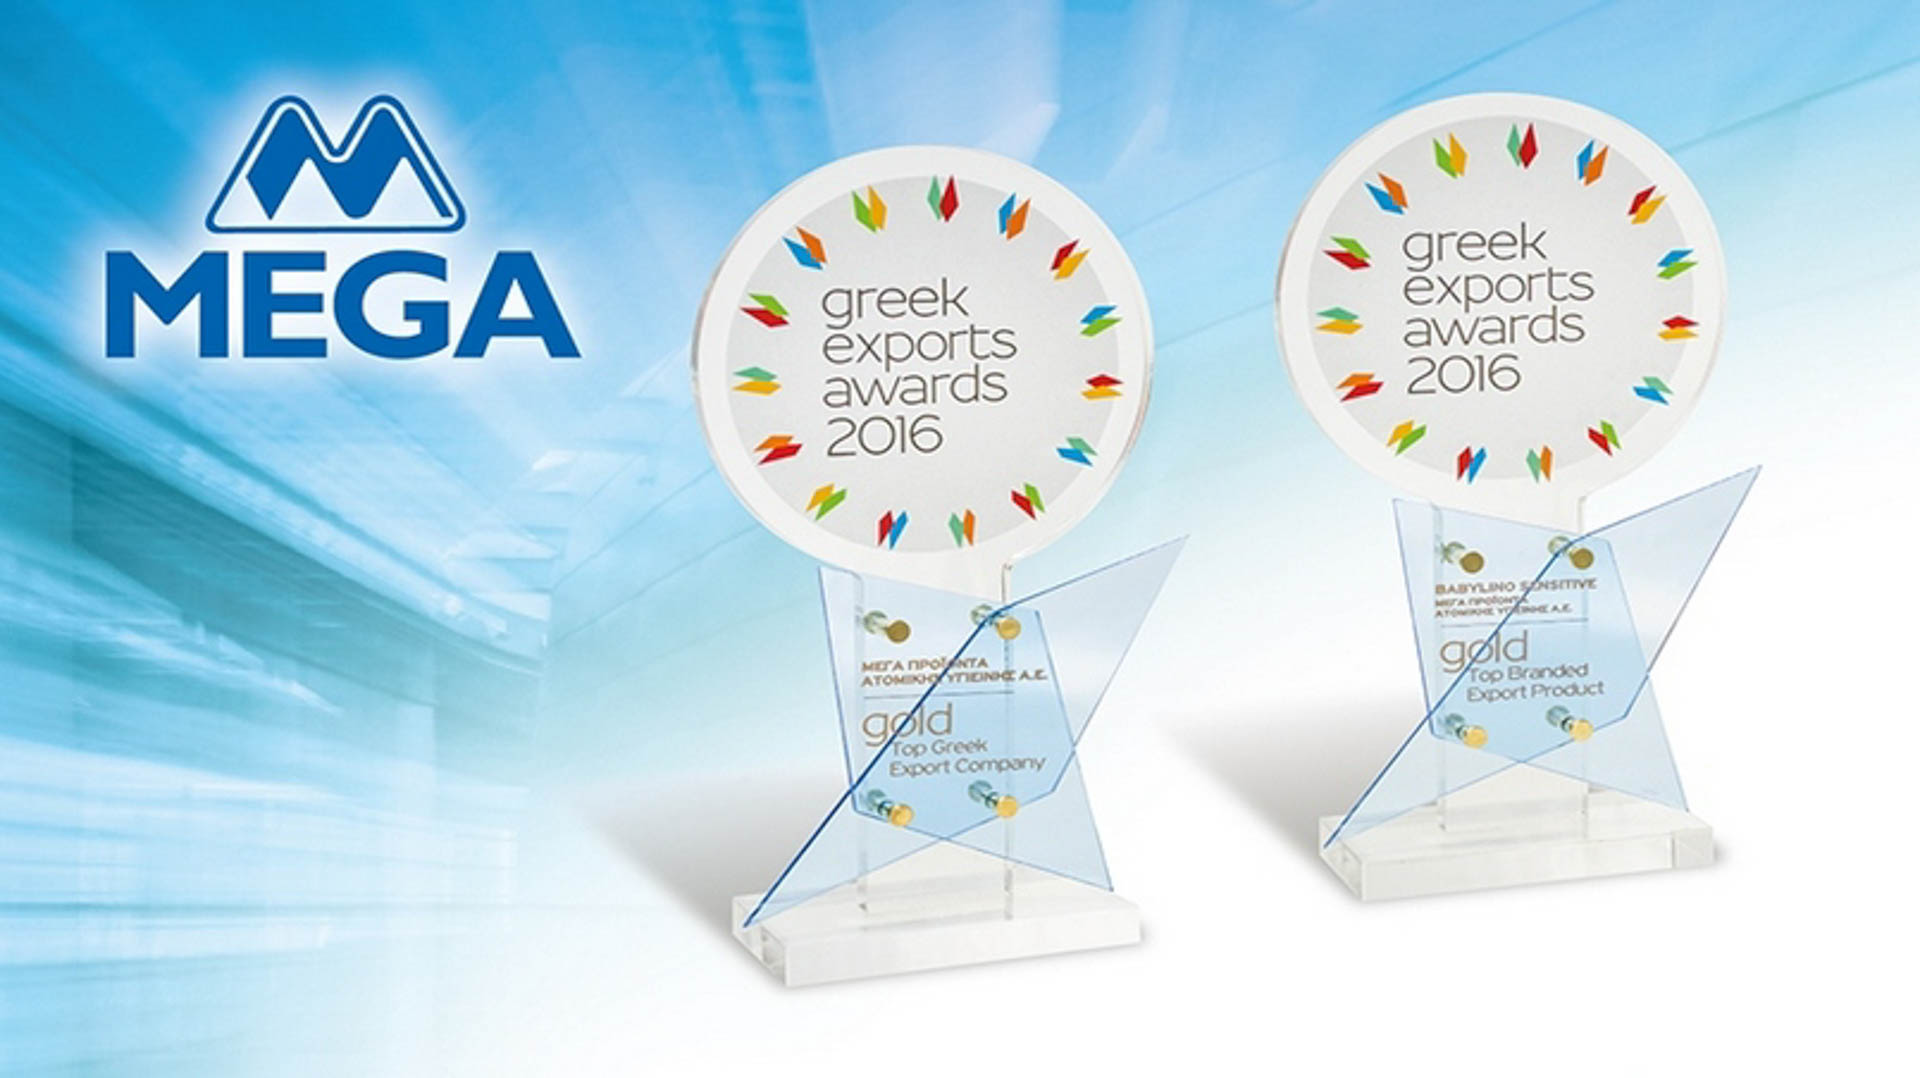 Three times awarded MEGA S.A to «Greek Exports Awards»